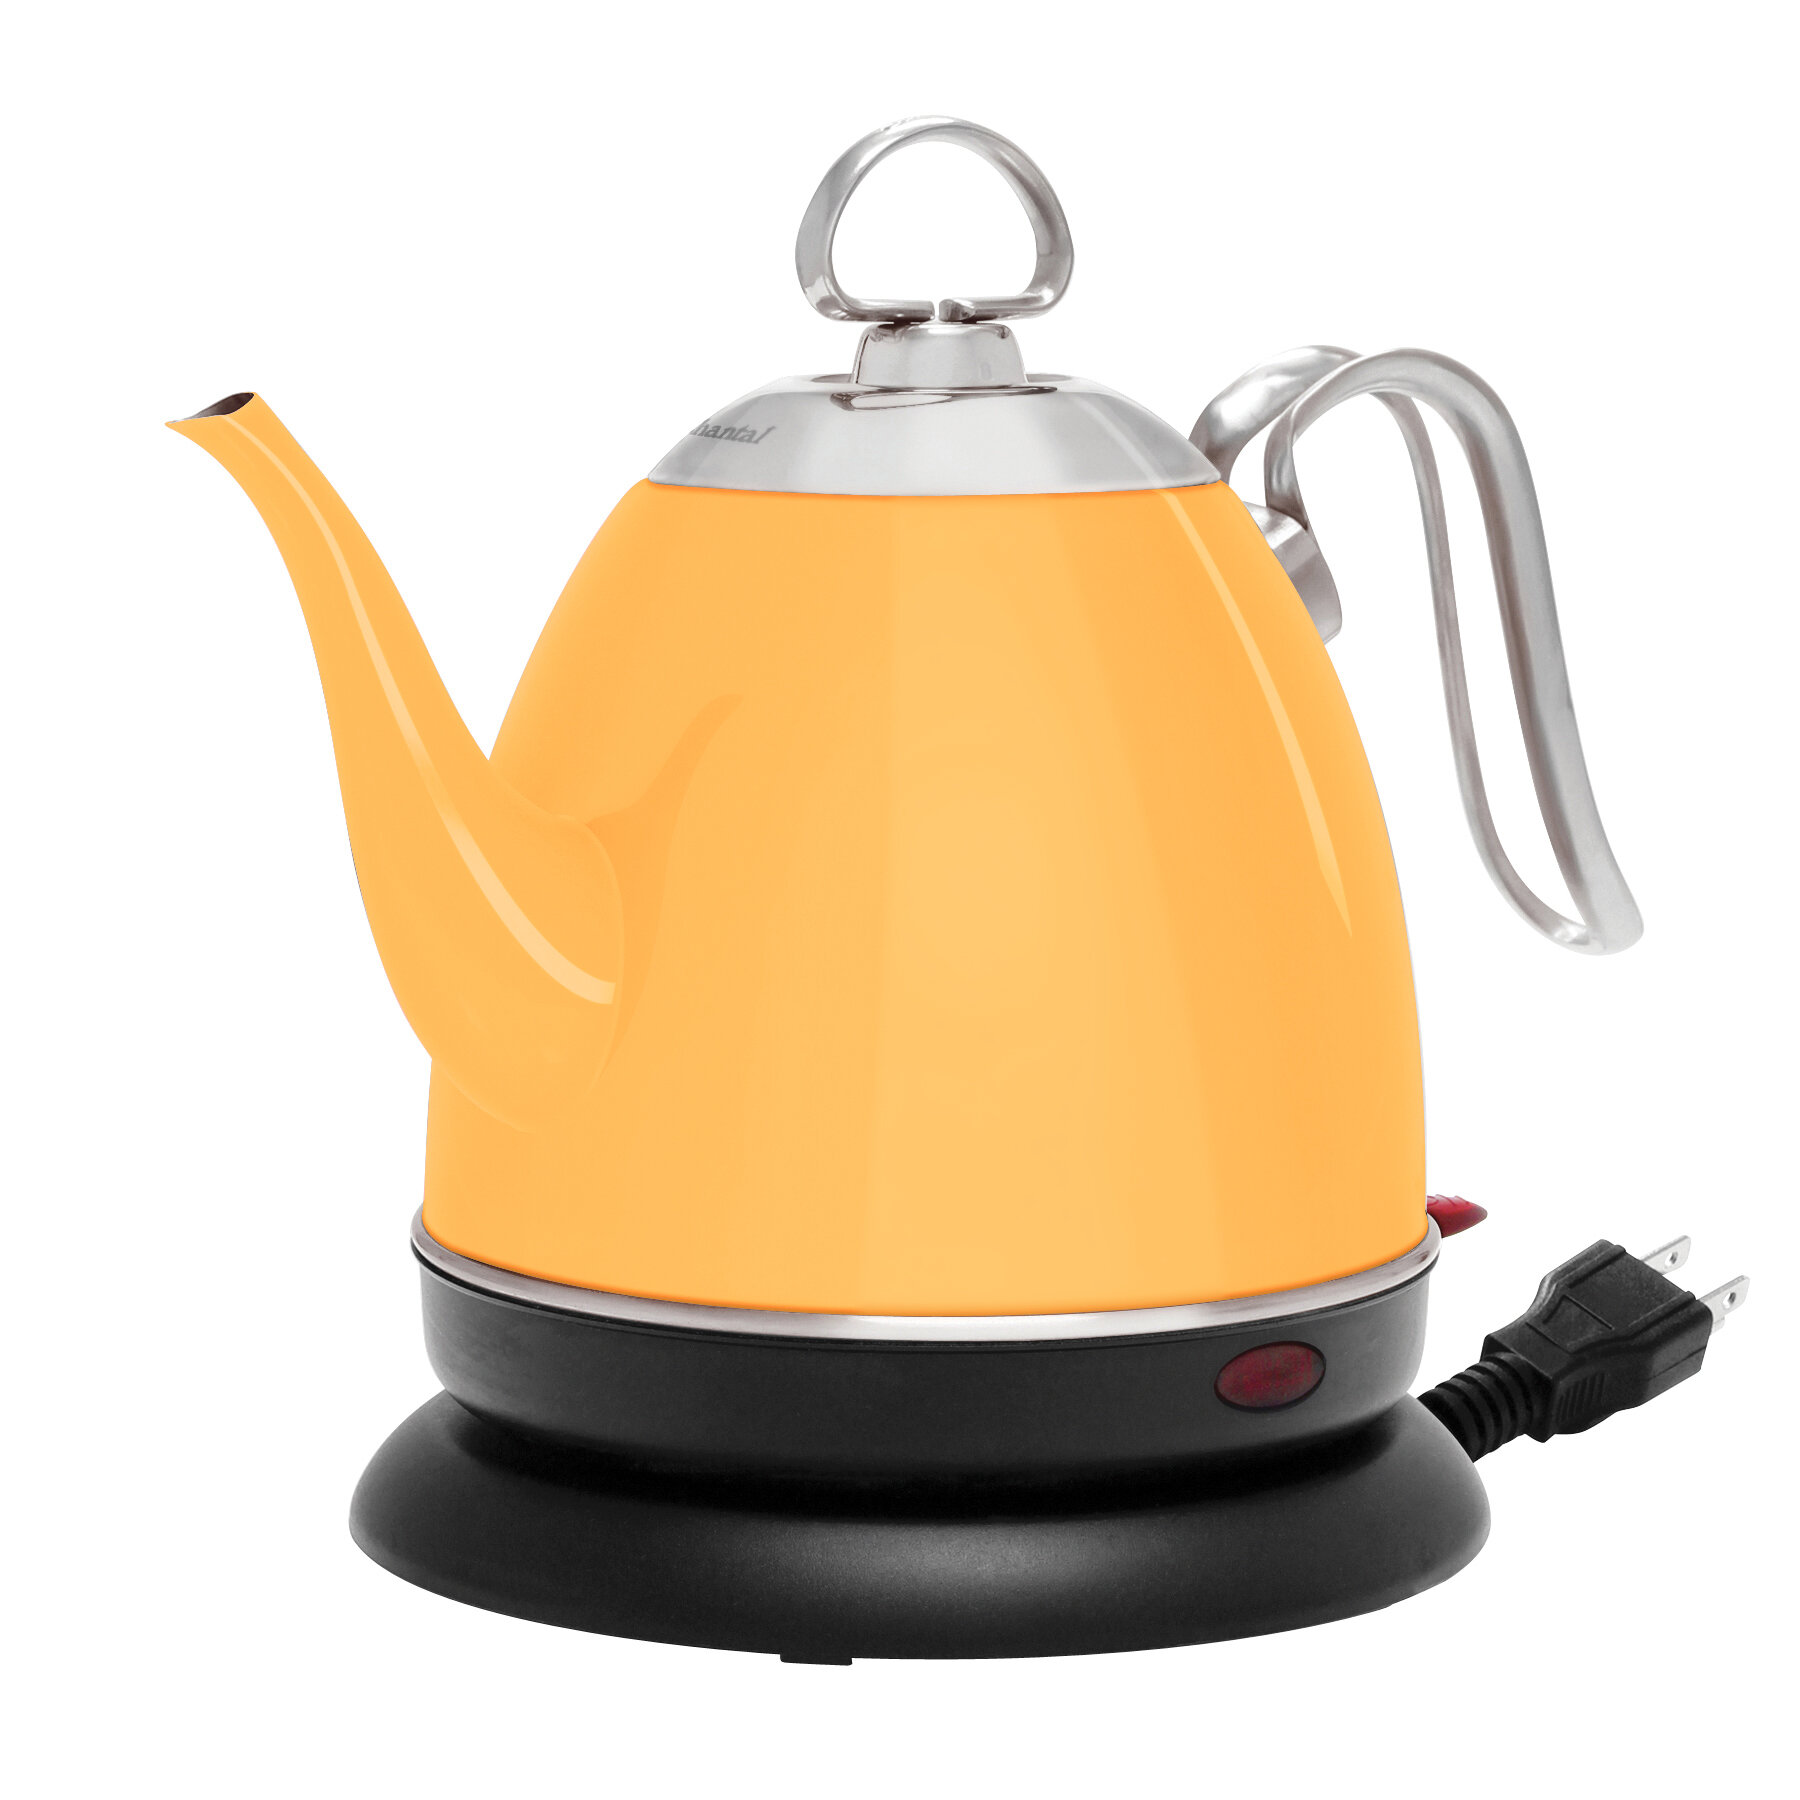 https://assets.wfcdn.com/im/29756551/compr-r85/1457/145780006/chantal-stainless-steel-electric-tea-kettle.jpg